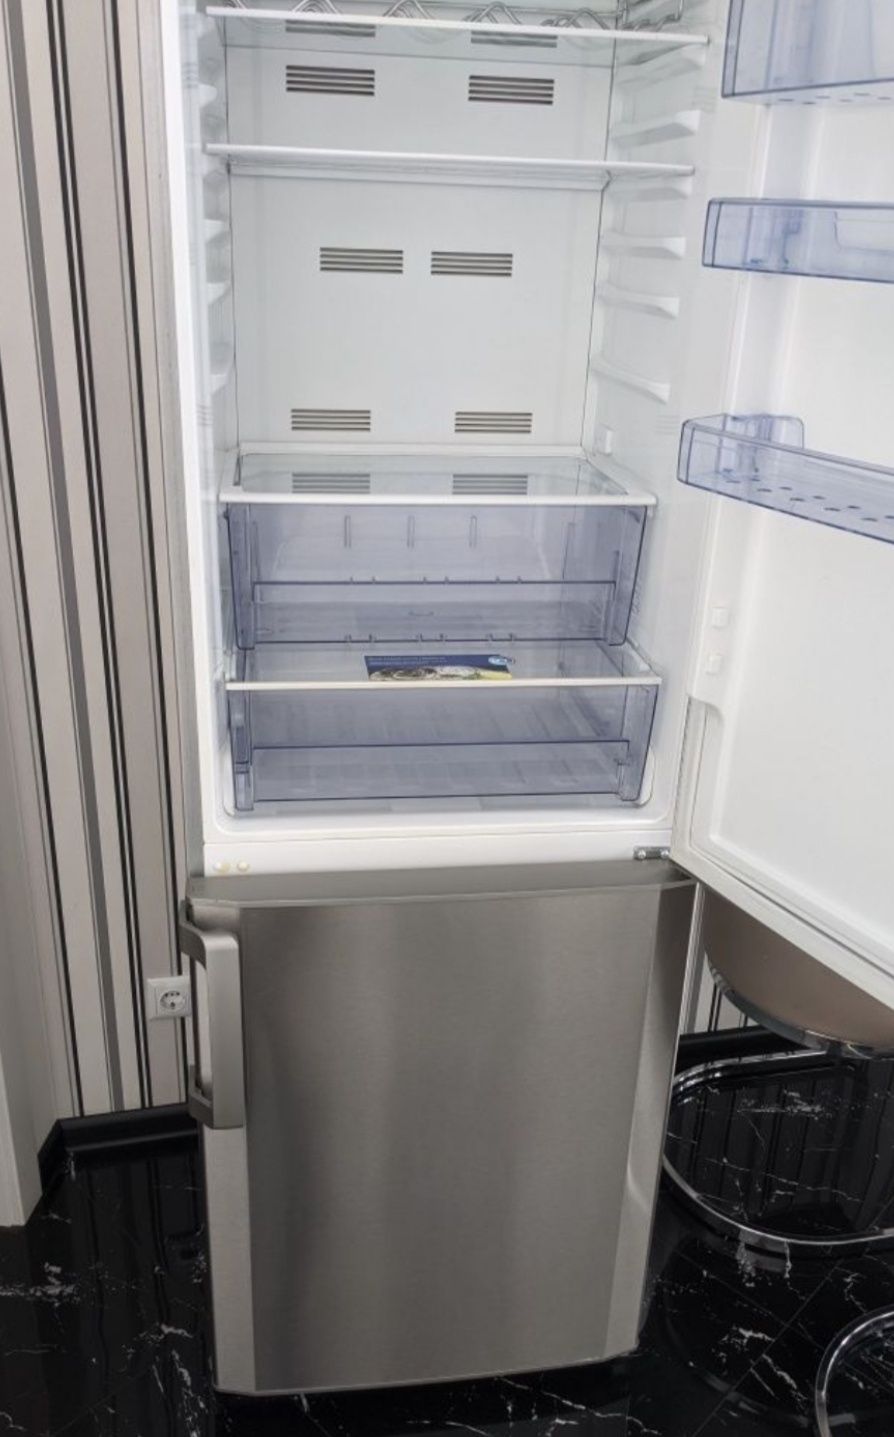 ХолодильникBEKO, б/у в отличном состоянии.